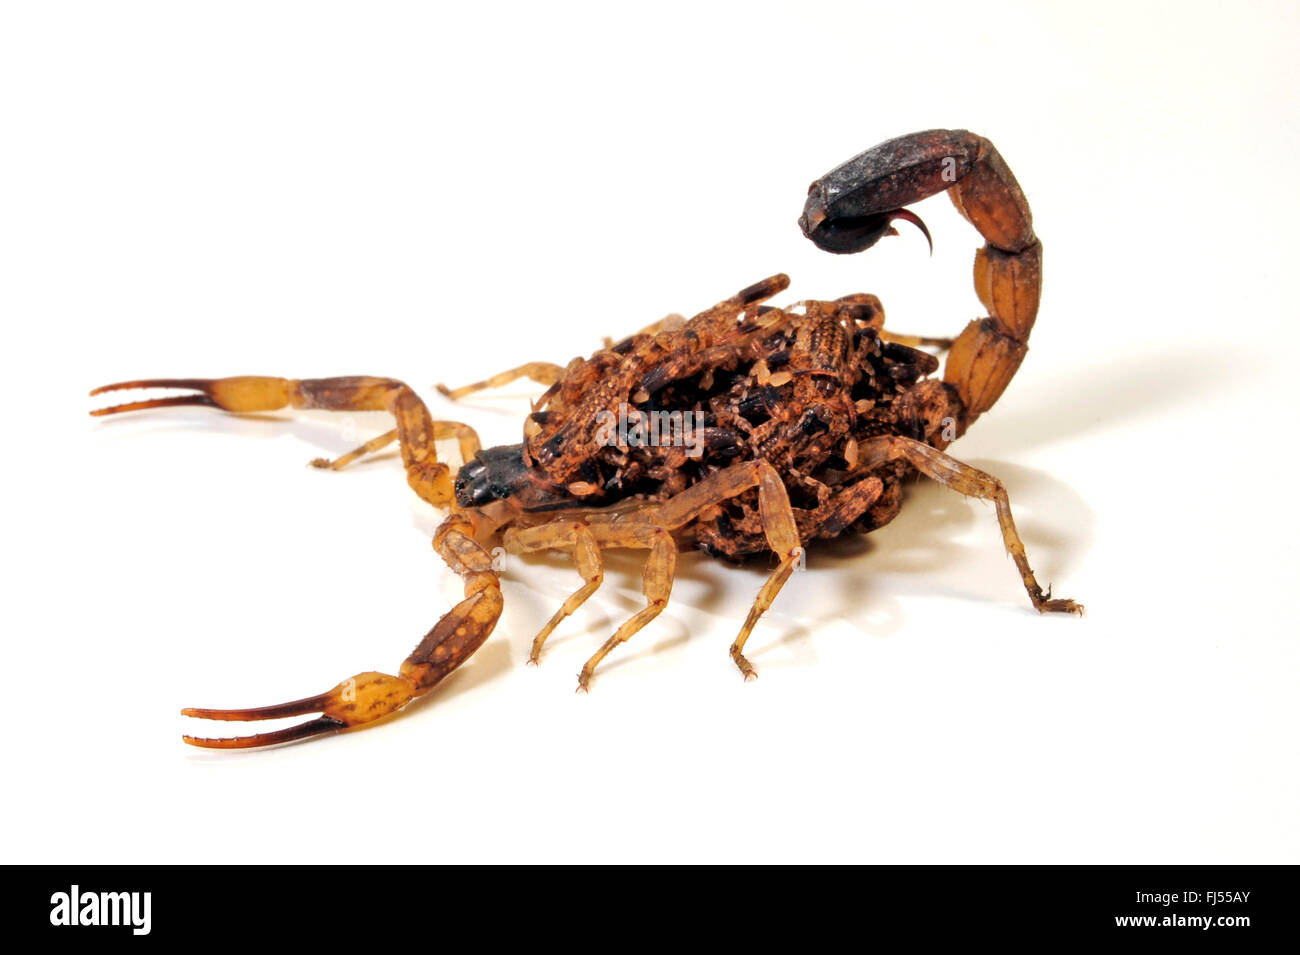 Marbré de scorpion, Scorpion, marbré peu peu d'écorce marbrée (Lychas Scorpion scorpion marmoreus), avec des enfants sur son dos Banque D'Images